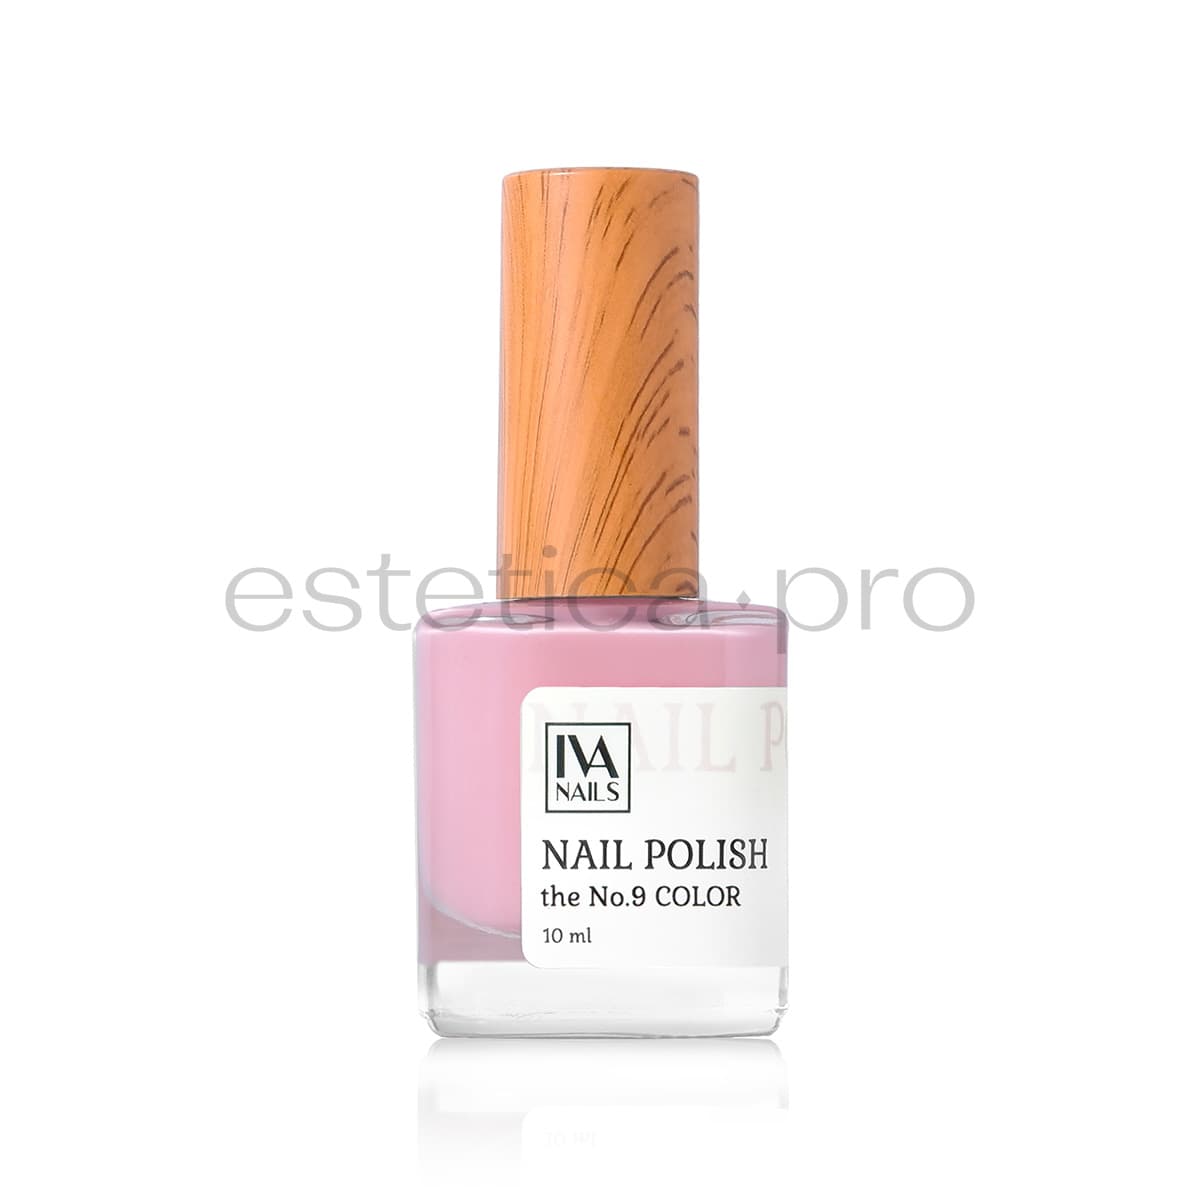 Лак для ногтей Iva Nails 09, 10мл.